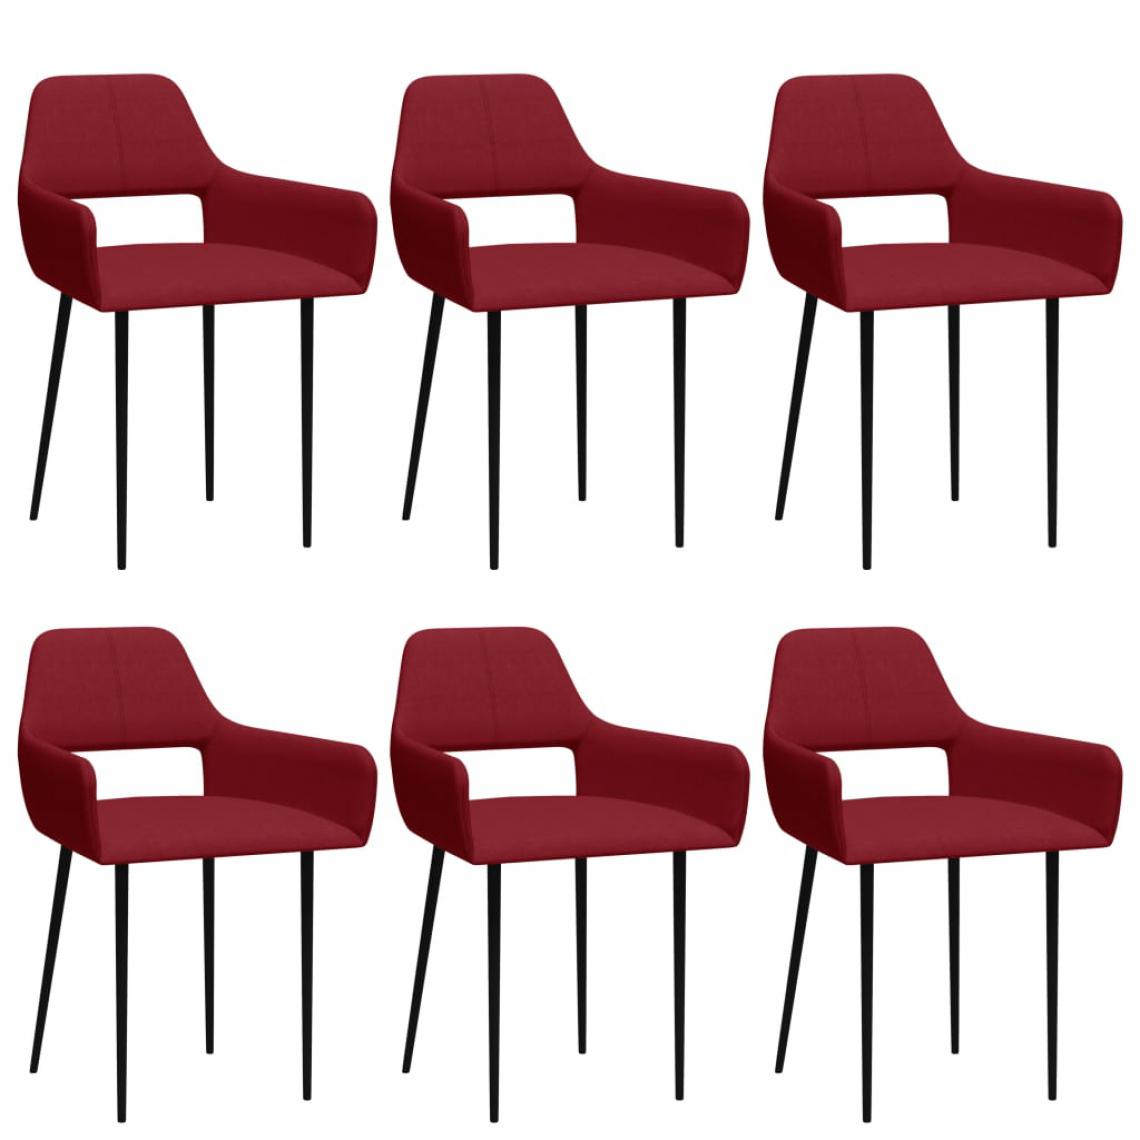 Vidaxl - vidaXL Chaises de salle à manger 6 pcs Rouge bordeaux Tissu - Chaises